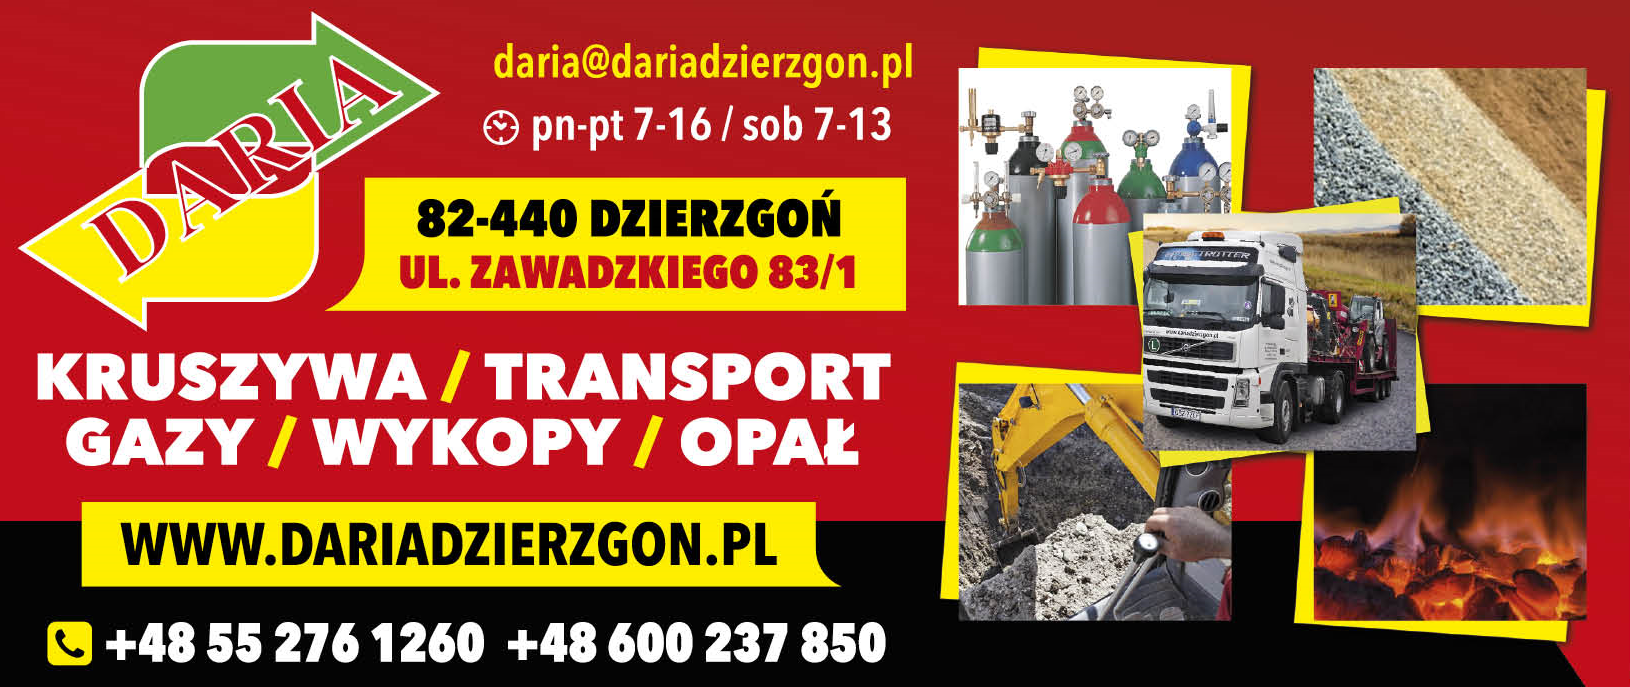 Usługi Transportowe "DARIA" Dzierzgoń Kruszywa / Transport / Gazy / Wykopy / Opał